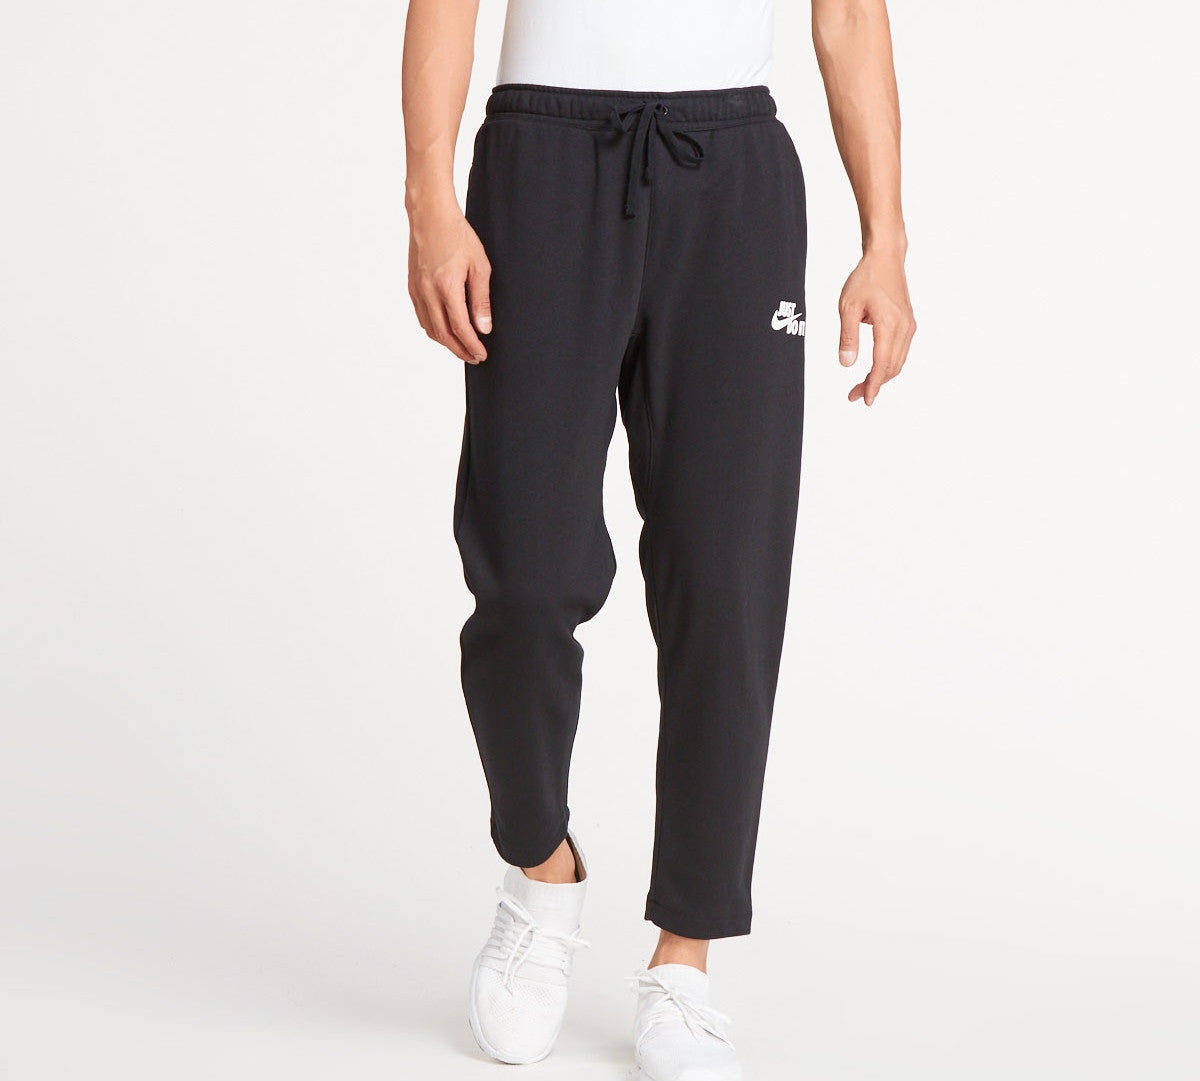 Nike Straight Casual Drawstring Sports Long Pants Black AJ2330-010 - 3